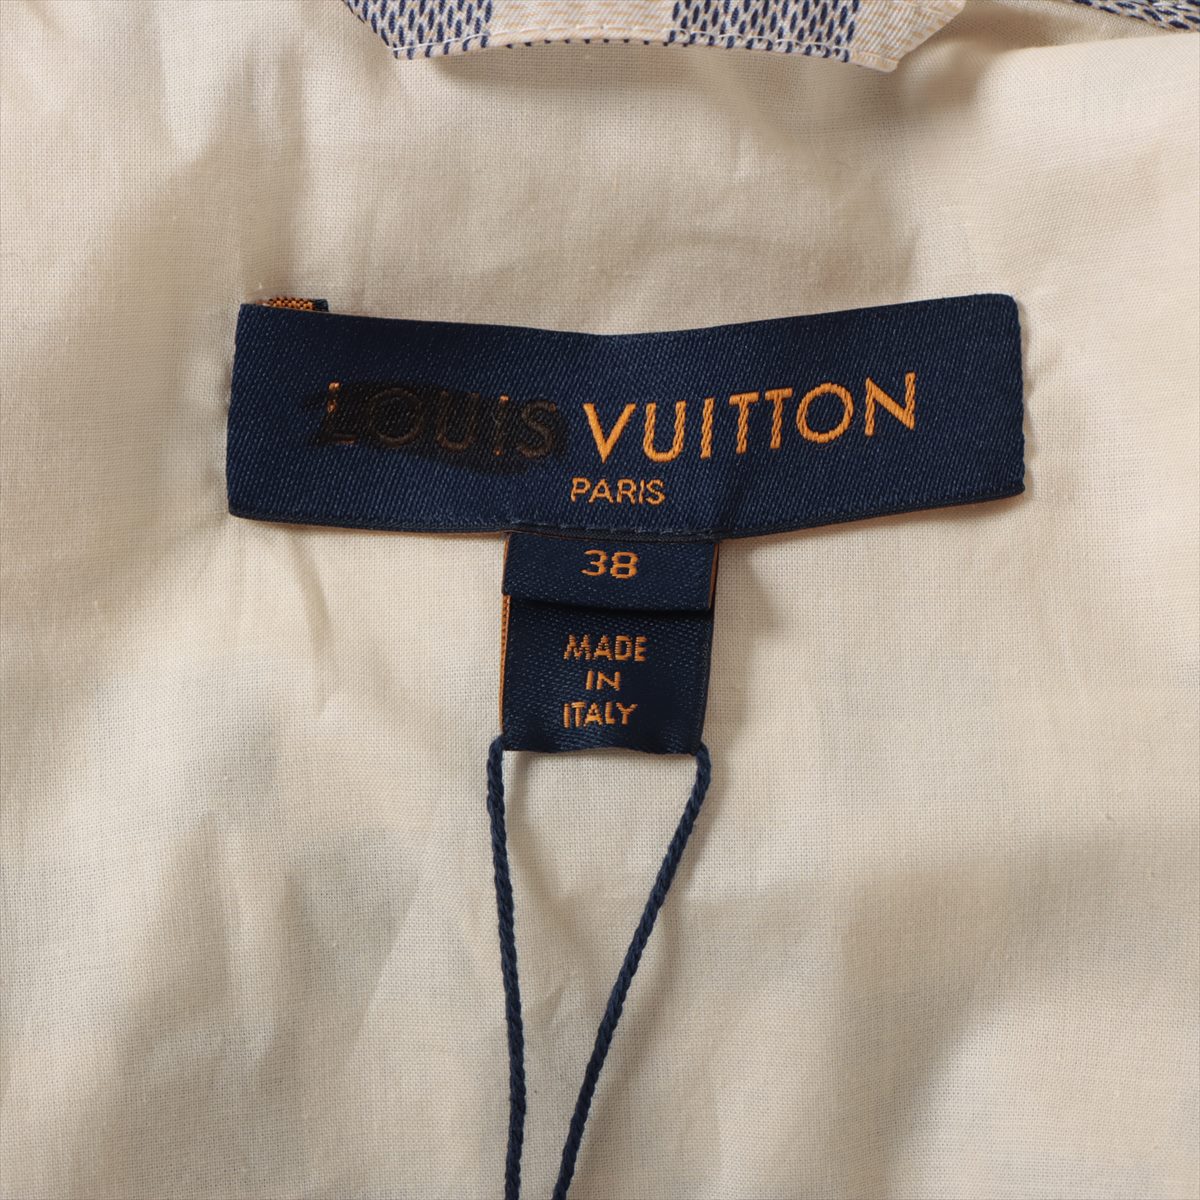 Louis Vuitton 22AW Cotton x Nylon Nylon Jacket 38  Multicolor RW222W Damier